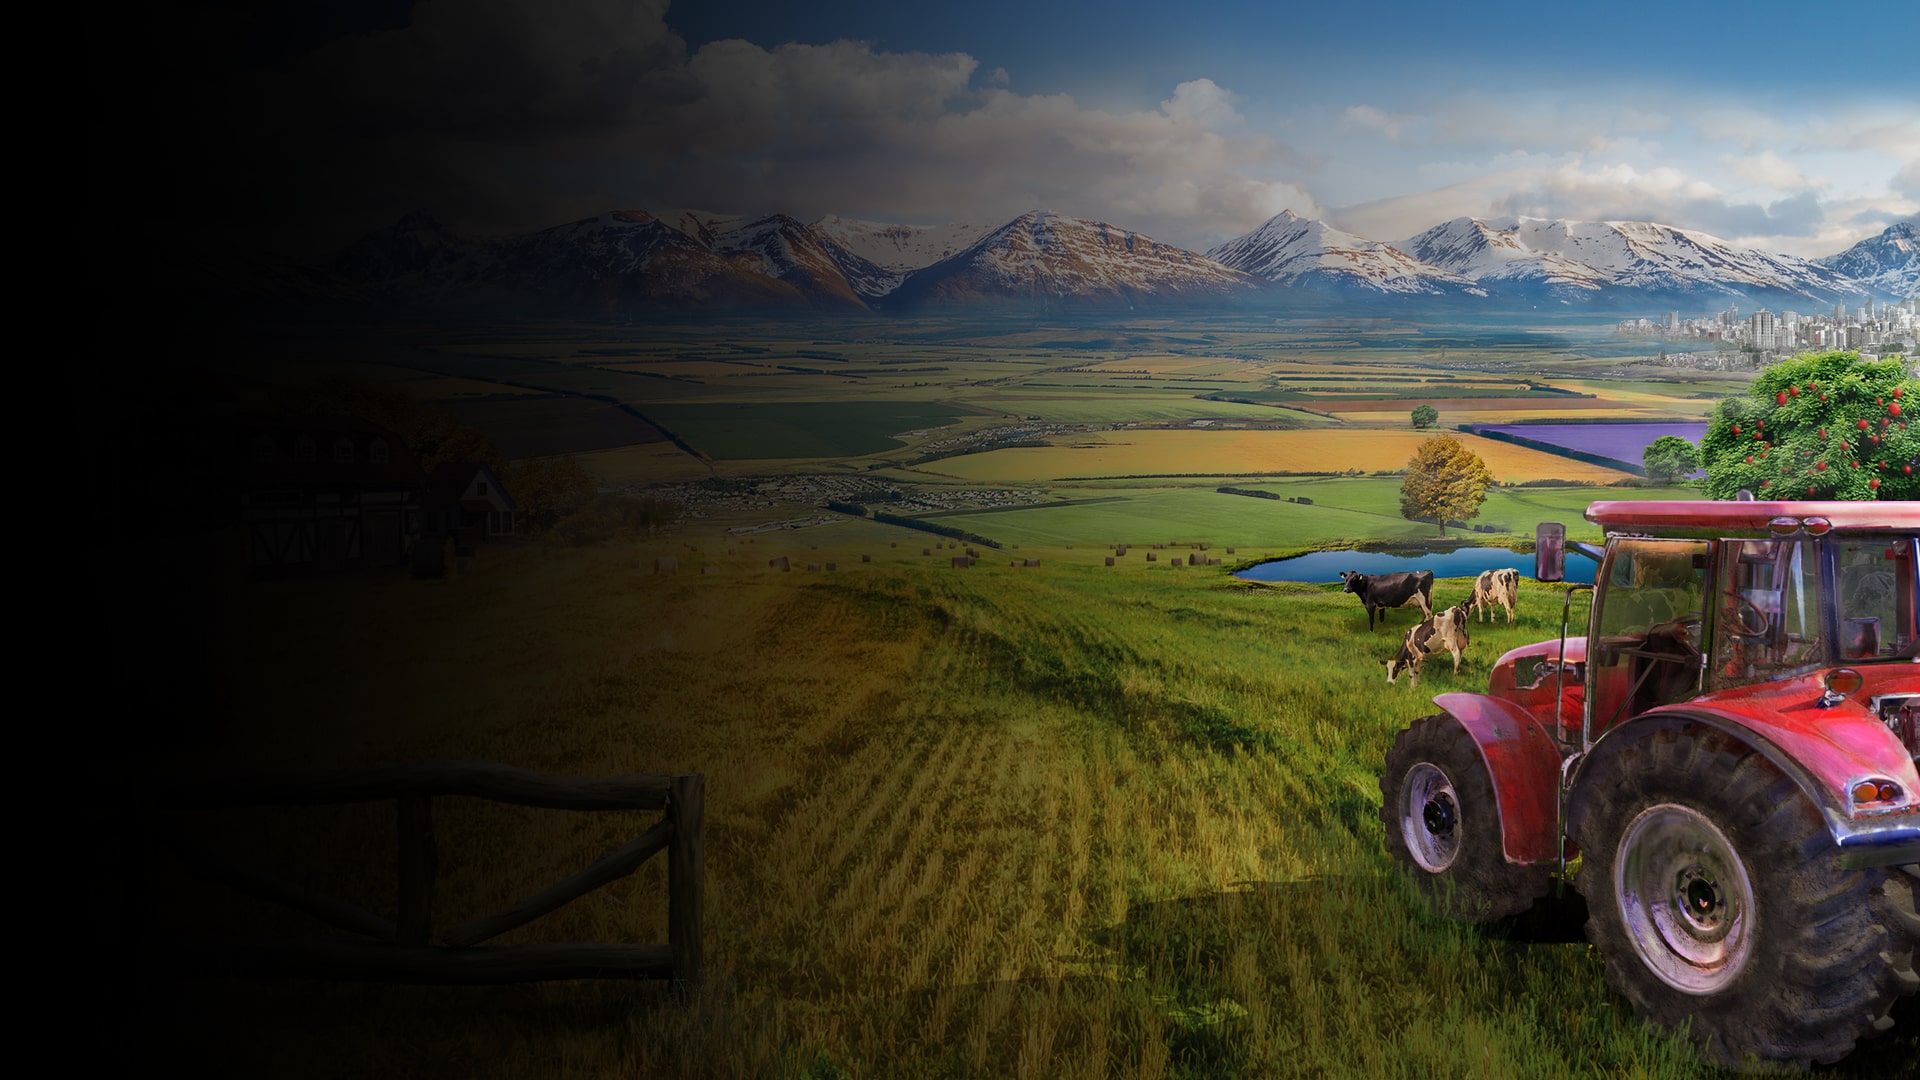 Review Farm Manager 2022 (PS4) – Quando cuidar da fazenda deixa de